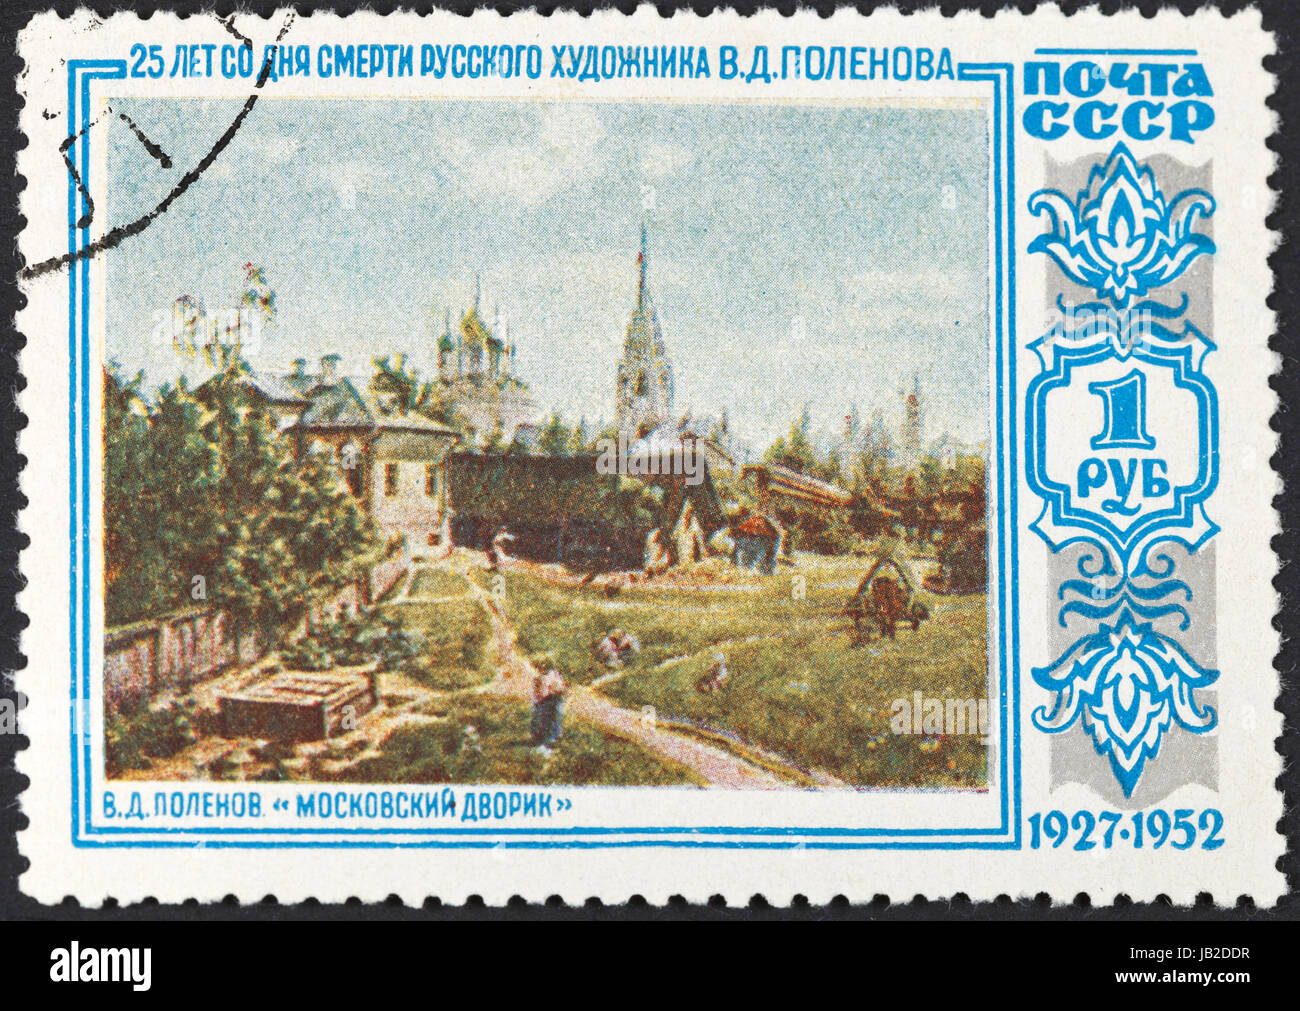 Urss - VERS 1952 : un timbre-poste imprimé en l'URSS Moscou peinture montre Courtyard by Polénov, vers 1952 Banque D'Images